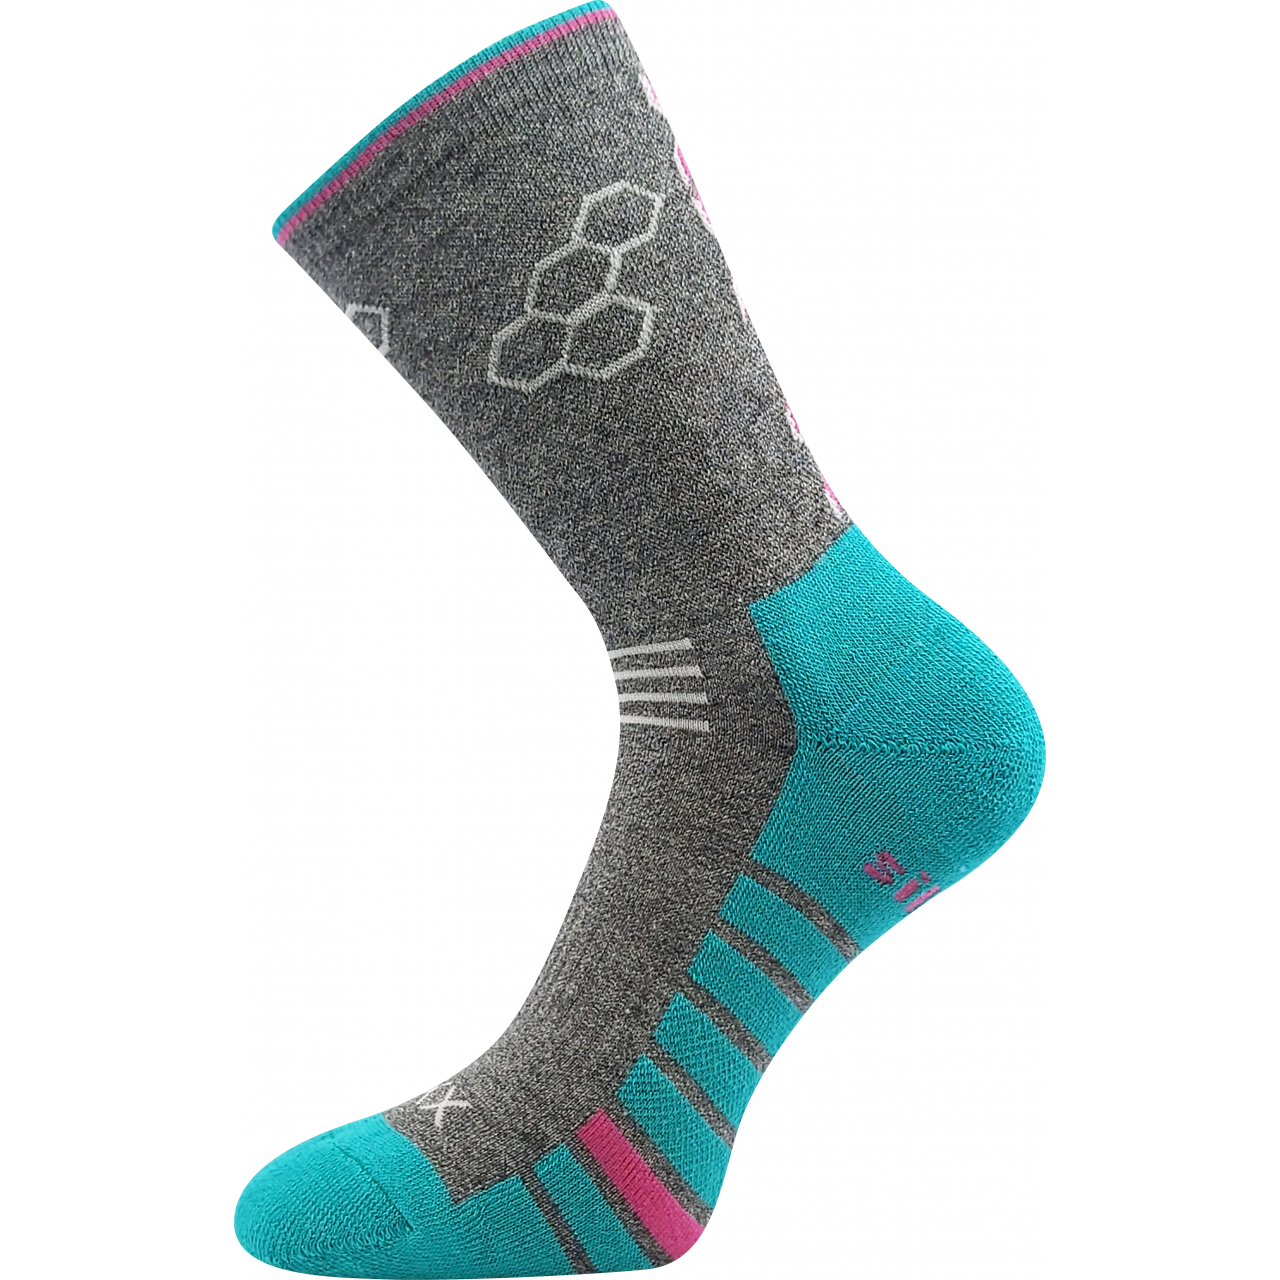 Ponožky sportovní unisex Voxx Virgo - šedé-modré, 39-42